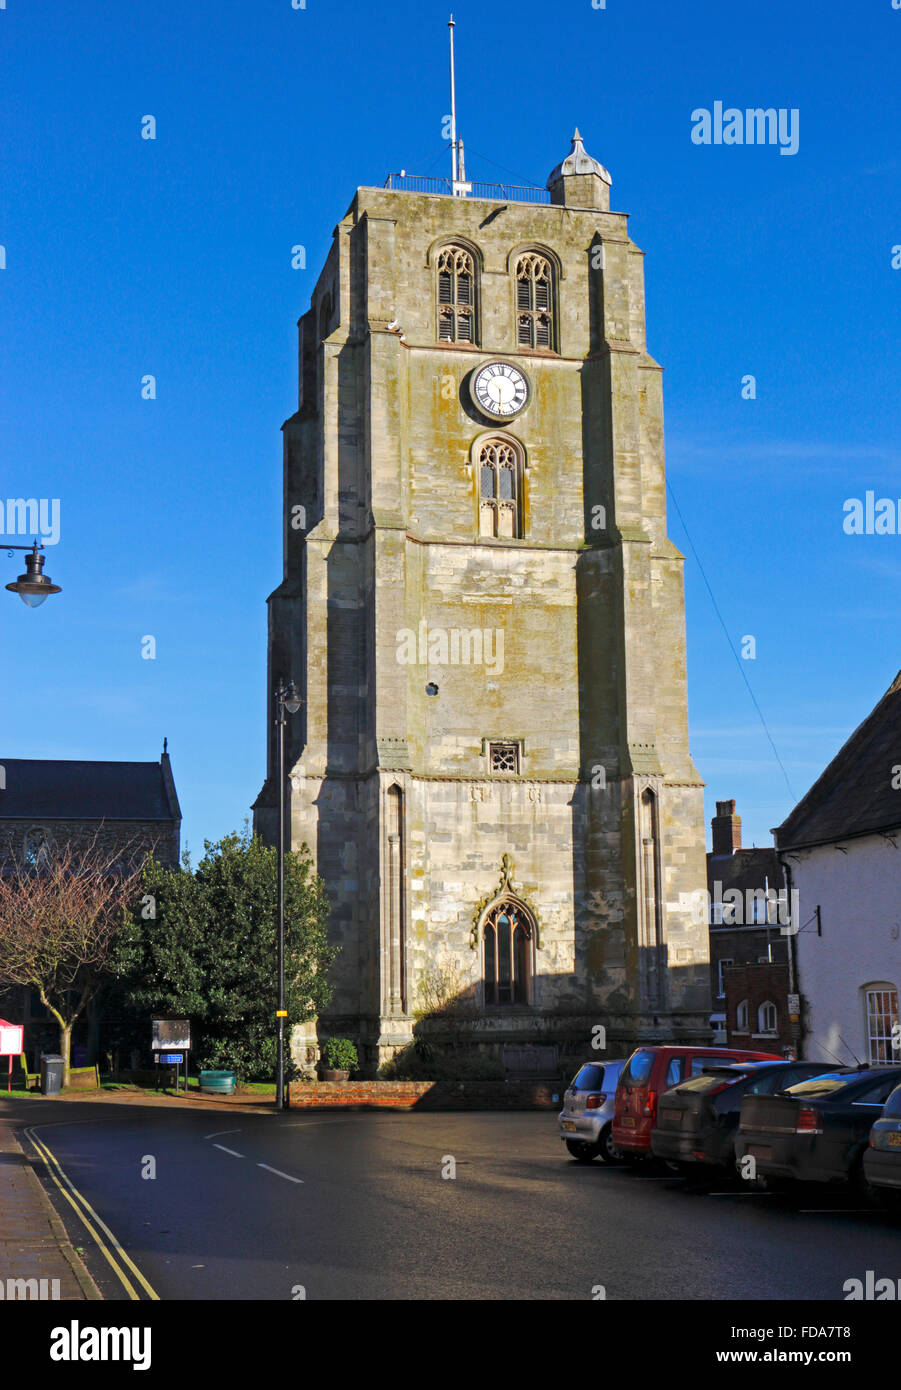 Le tour de l'église paroissiale de St Michel Archange à Beccles, Suffolk, Angleterre, Royaume-Uni. Banque D'Images